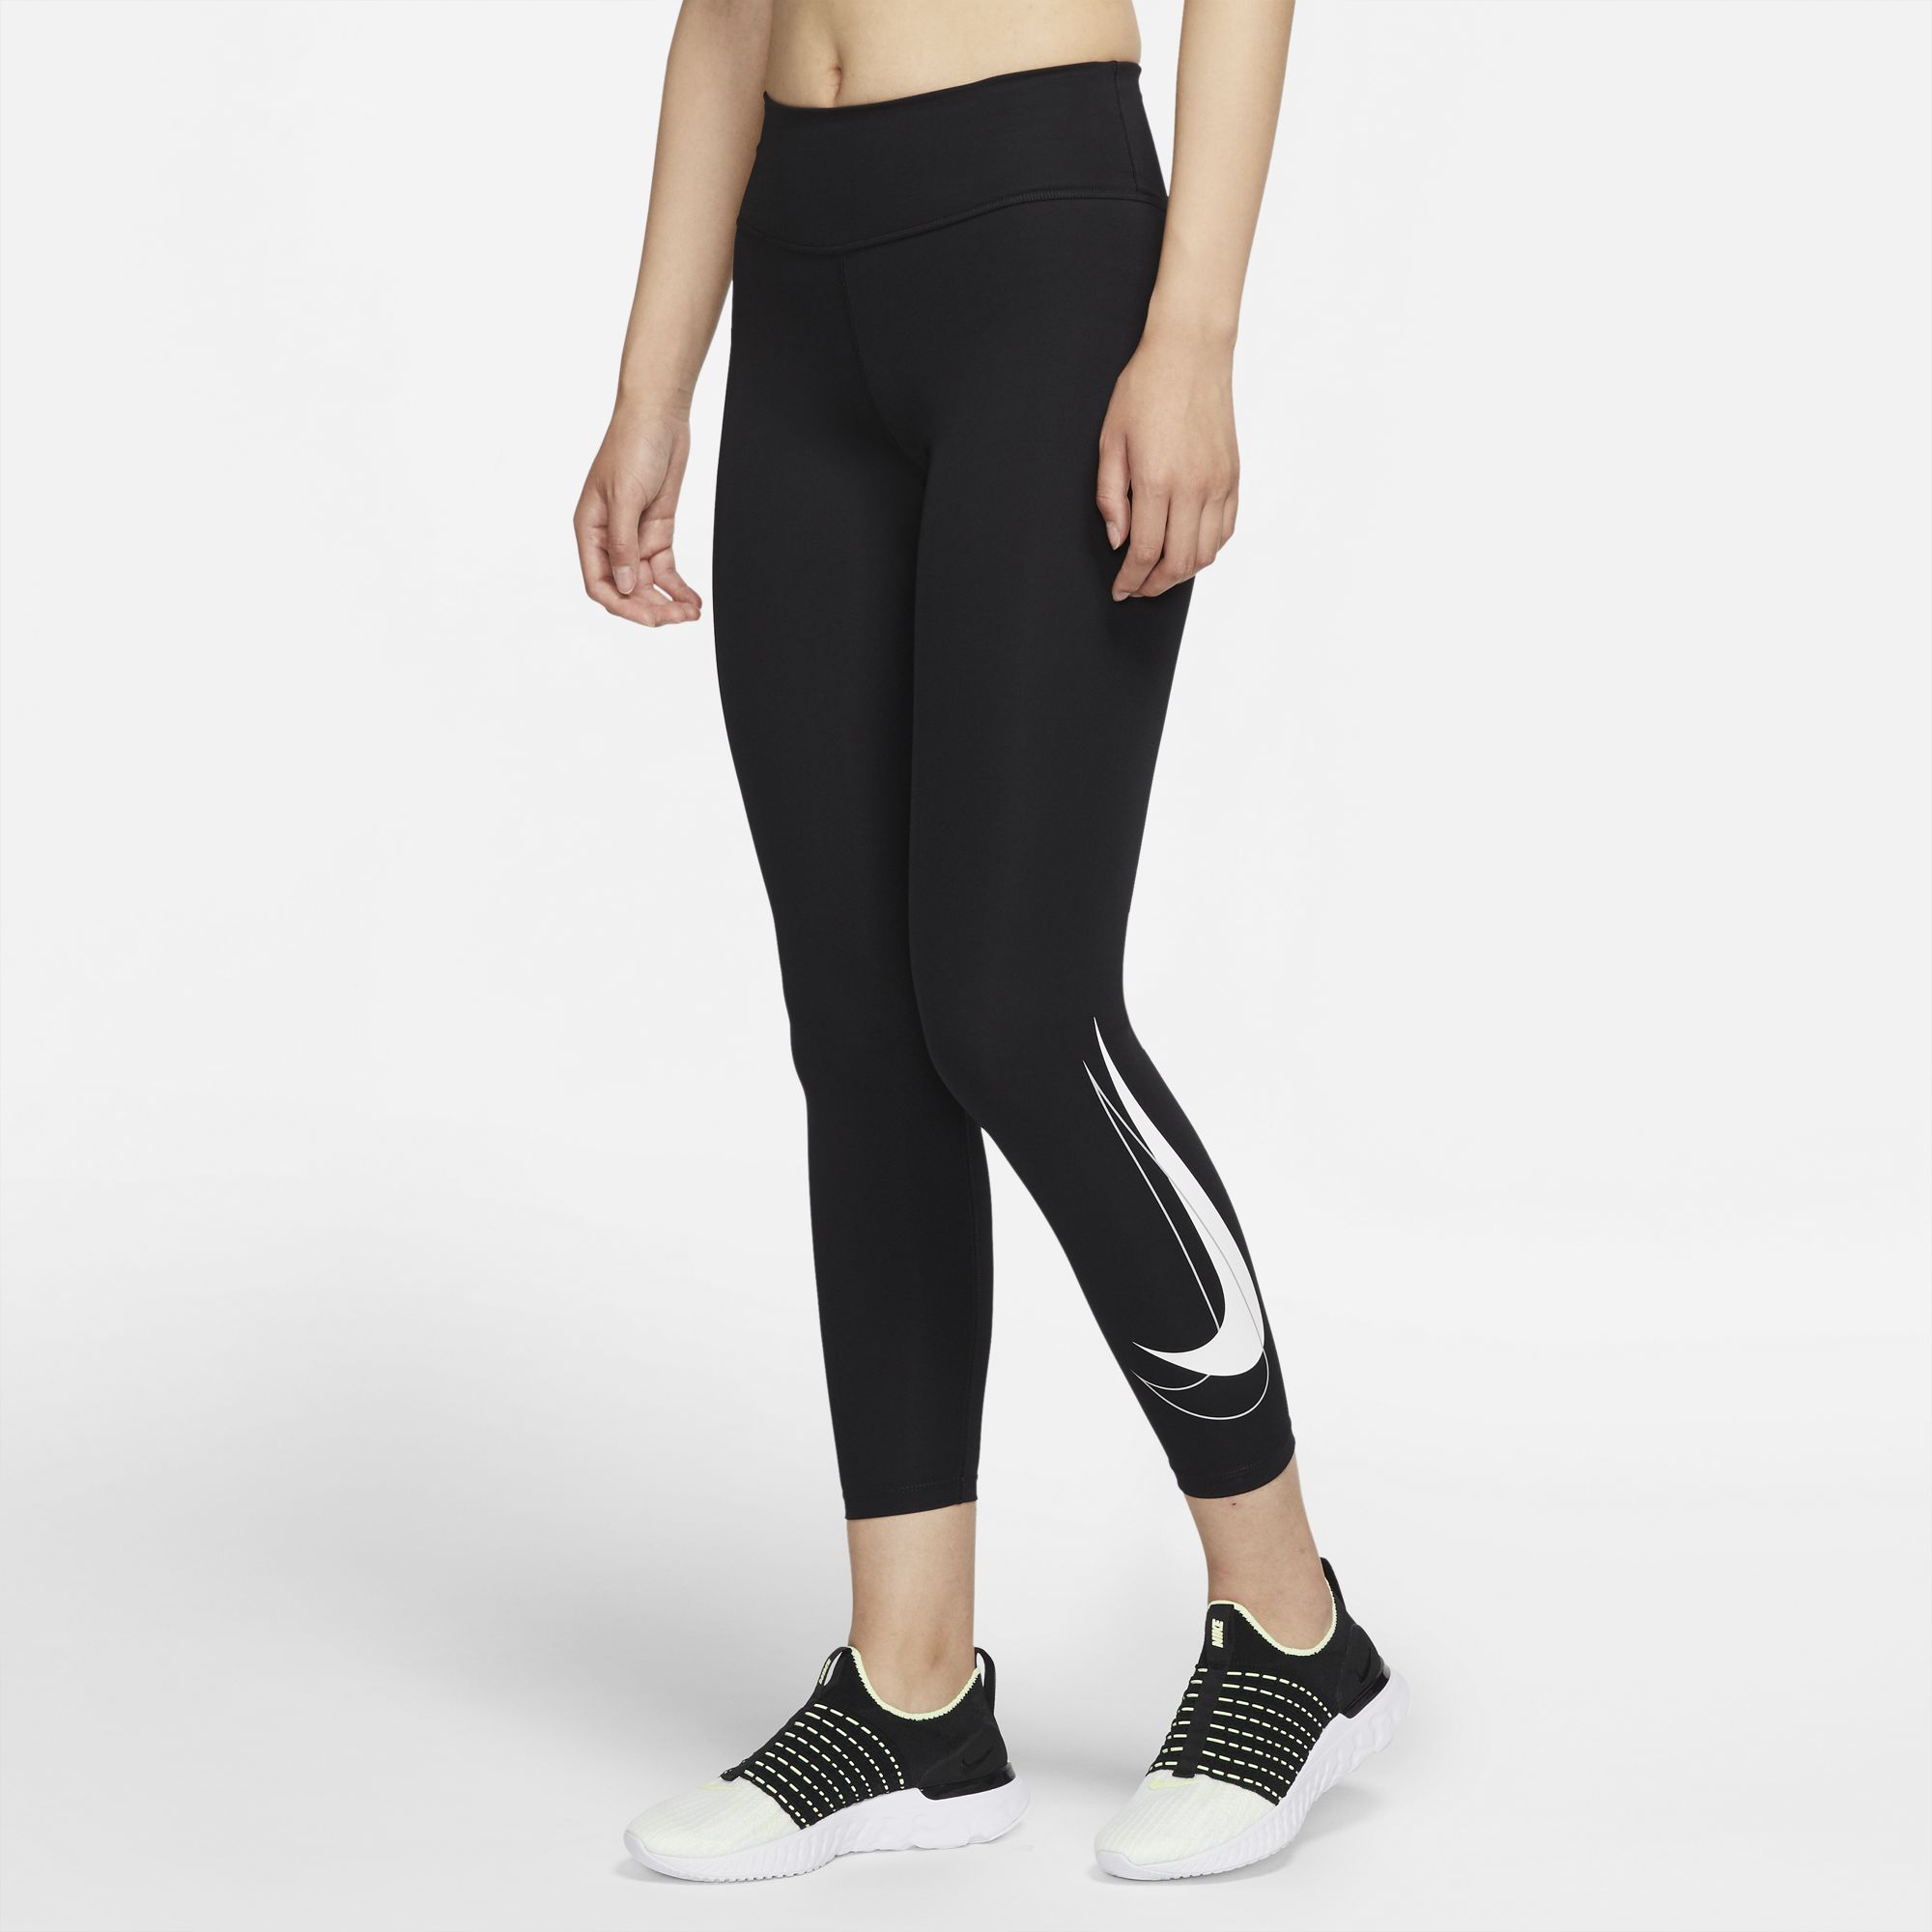 Nike Women's Leggings AIR DRI-FIT 7/8 Tight, Black/White